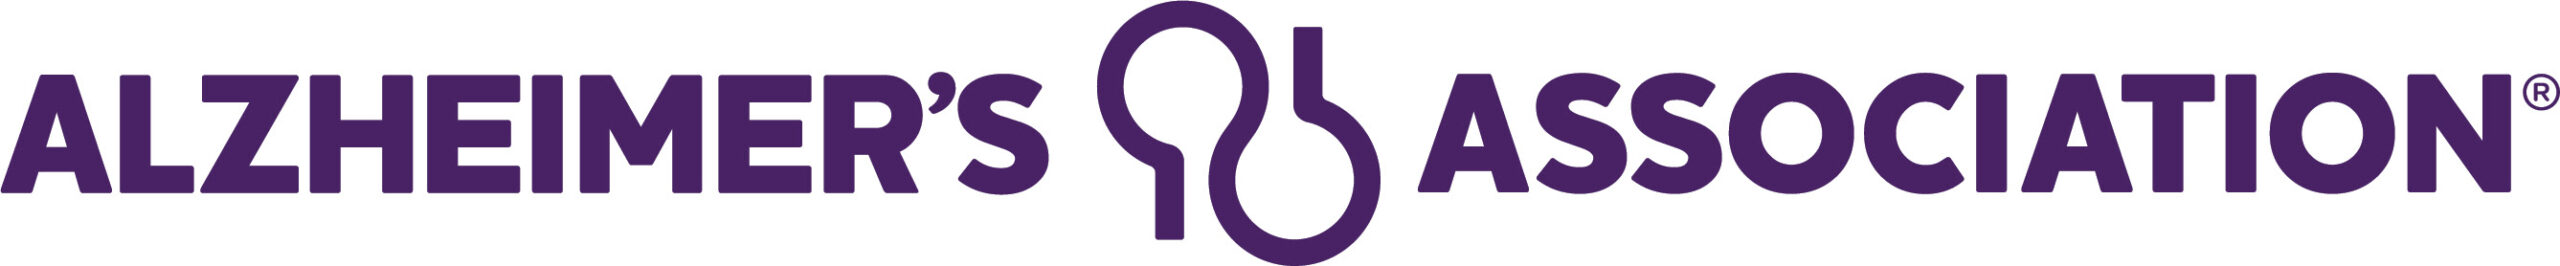 AA logo-signature